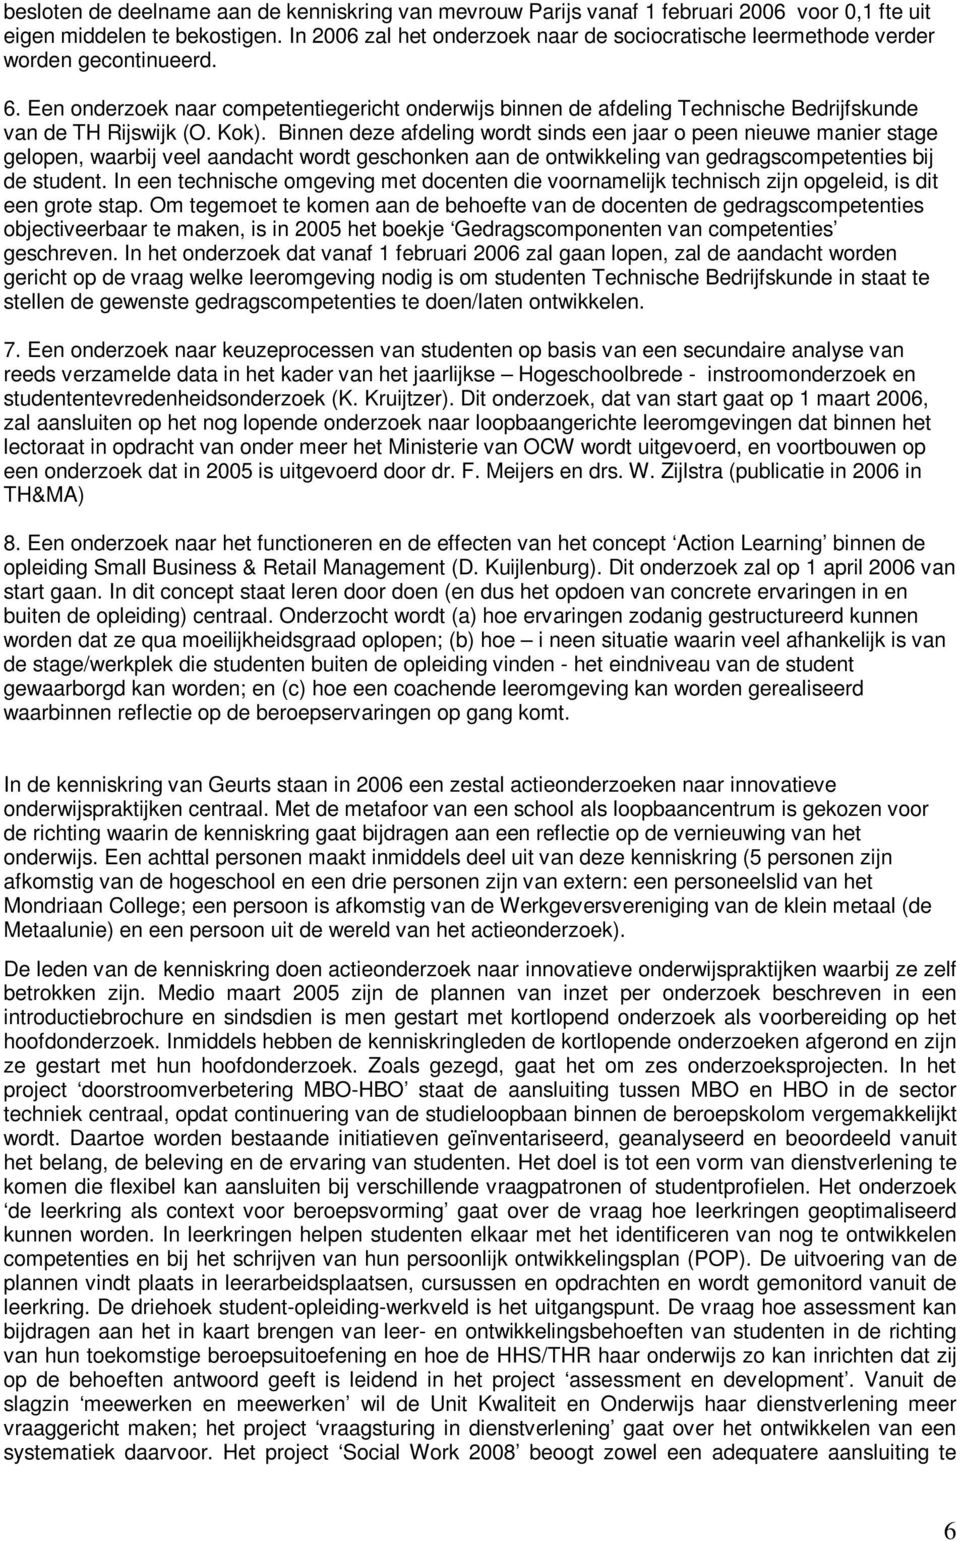 Een onderzoek naar competentiegericht onderwijs binnen de afdeling Technische Bedrijfskunde van de TH Rijswijk (O. Kok).